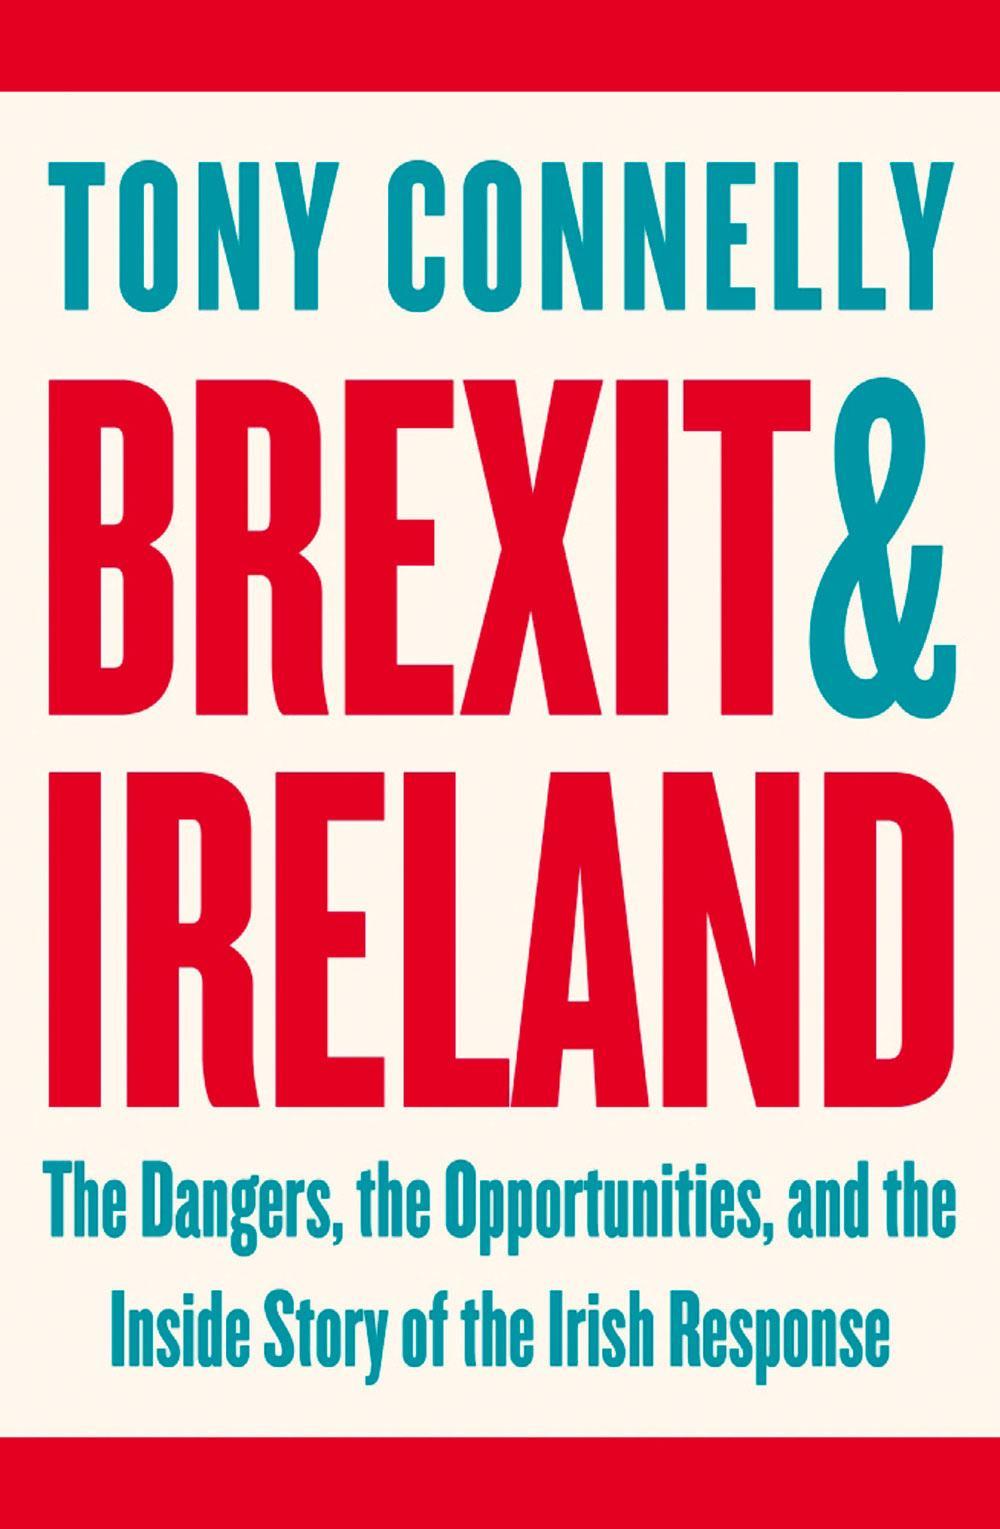 Brexit & Ireland: The Dangers, the Opportunities, and the Inside Story of the Irish Response door Tony Connelly is uitgegeven bij Penguin en kost 21 euro